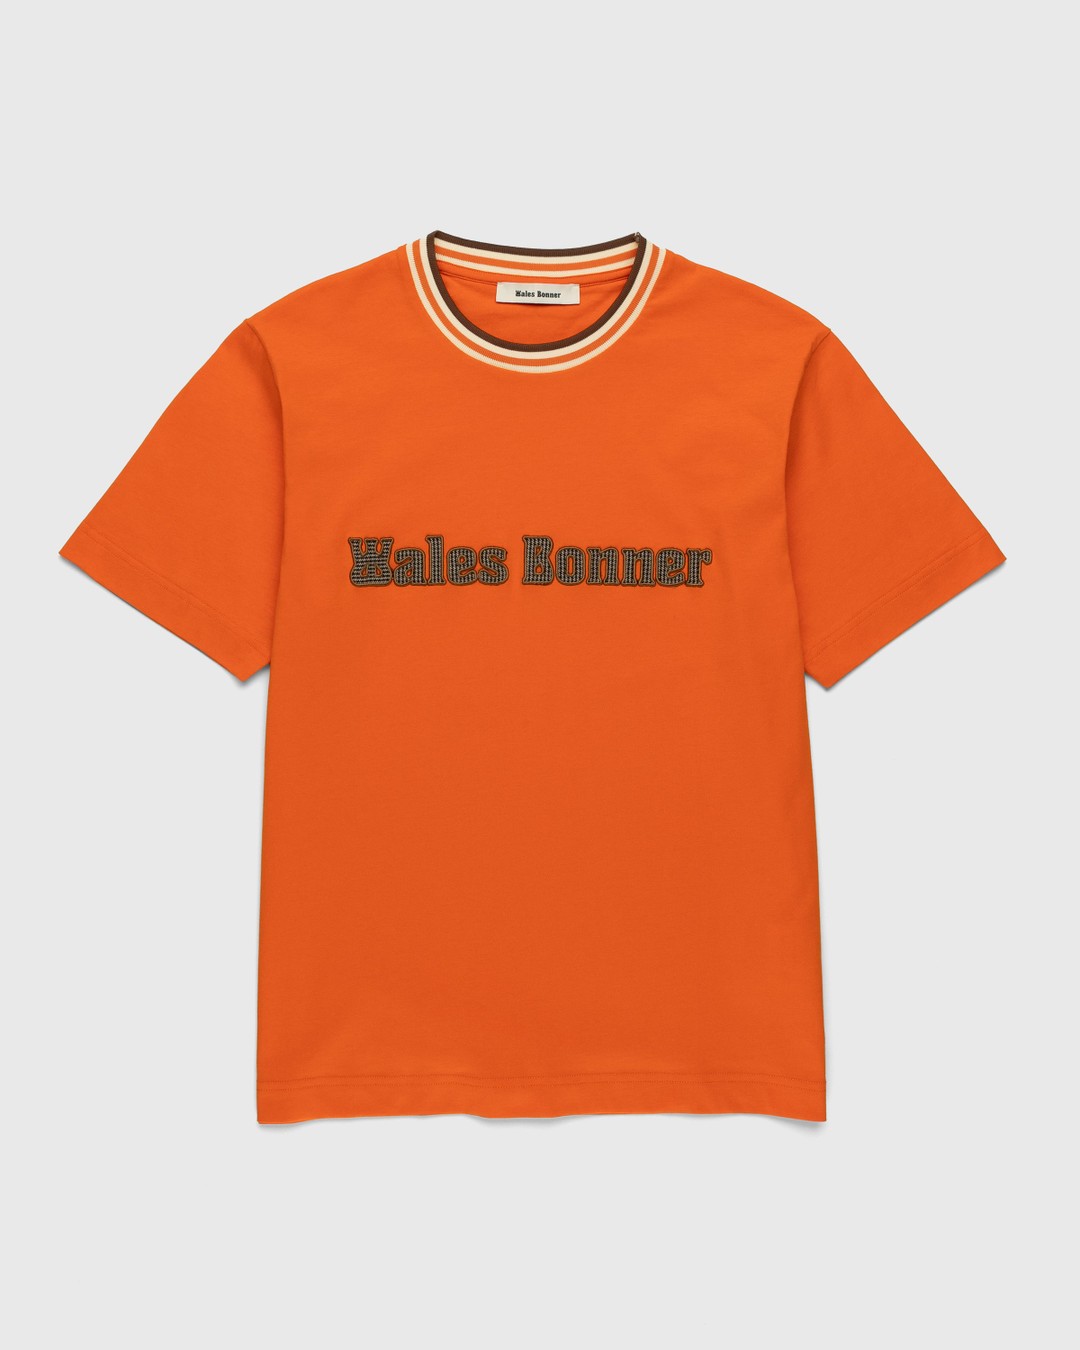 Wales Bonner – Original T-Shirt Orange - T-shirts - Orange - Image 1